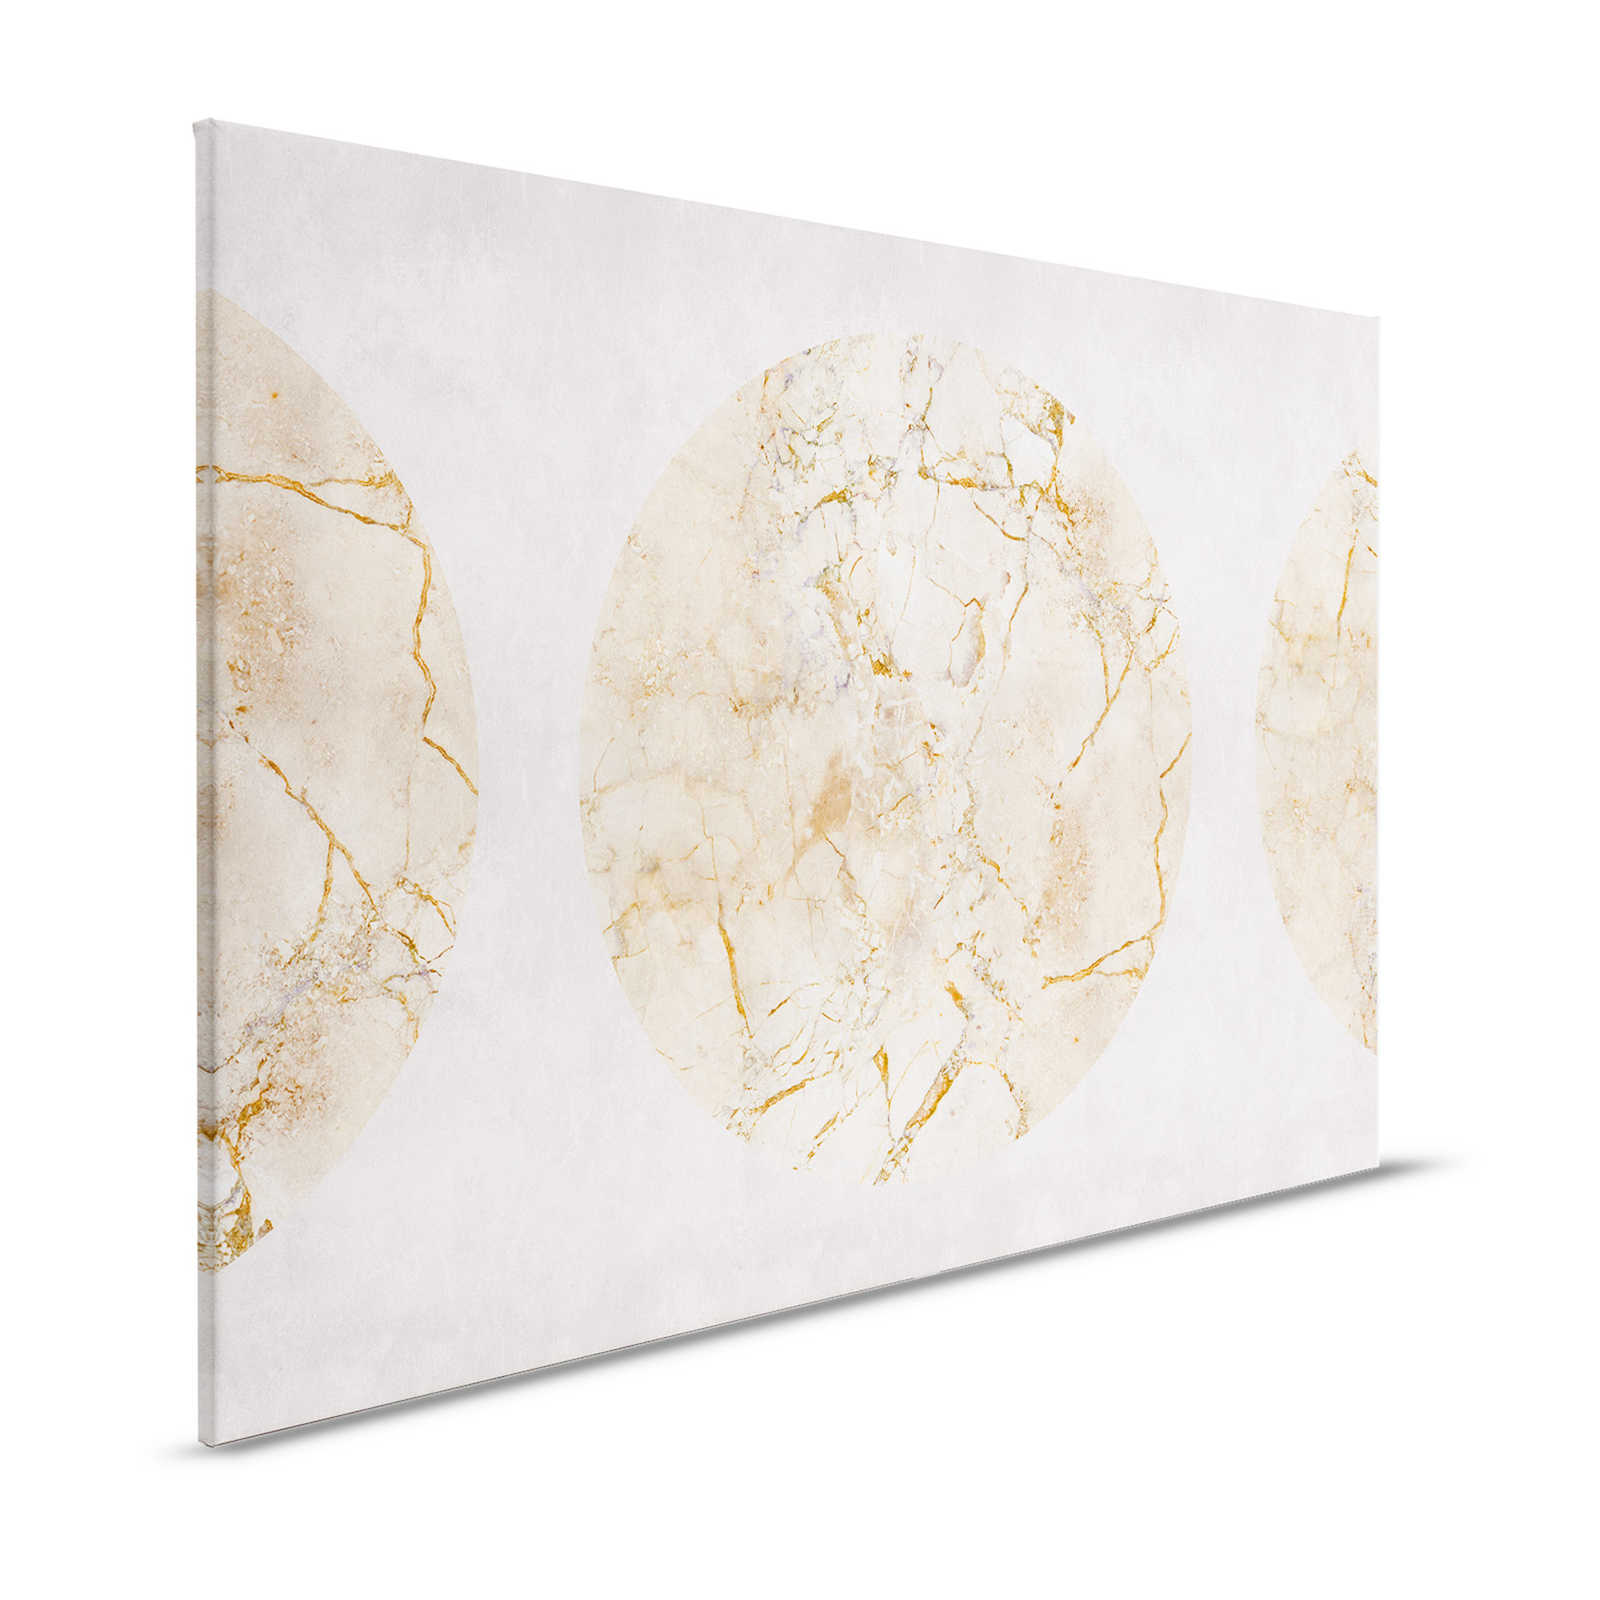 Venus 1 - Canvas schilderij goud marmer met cirkelmotief & gipslook - 1.20 m x 0.80 m
